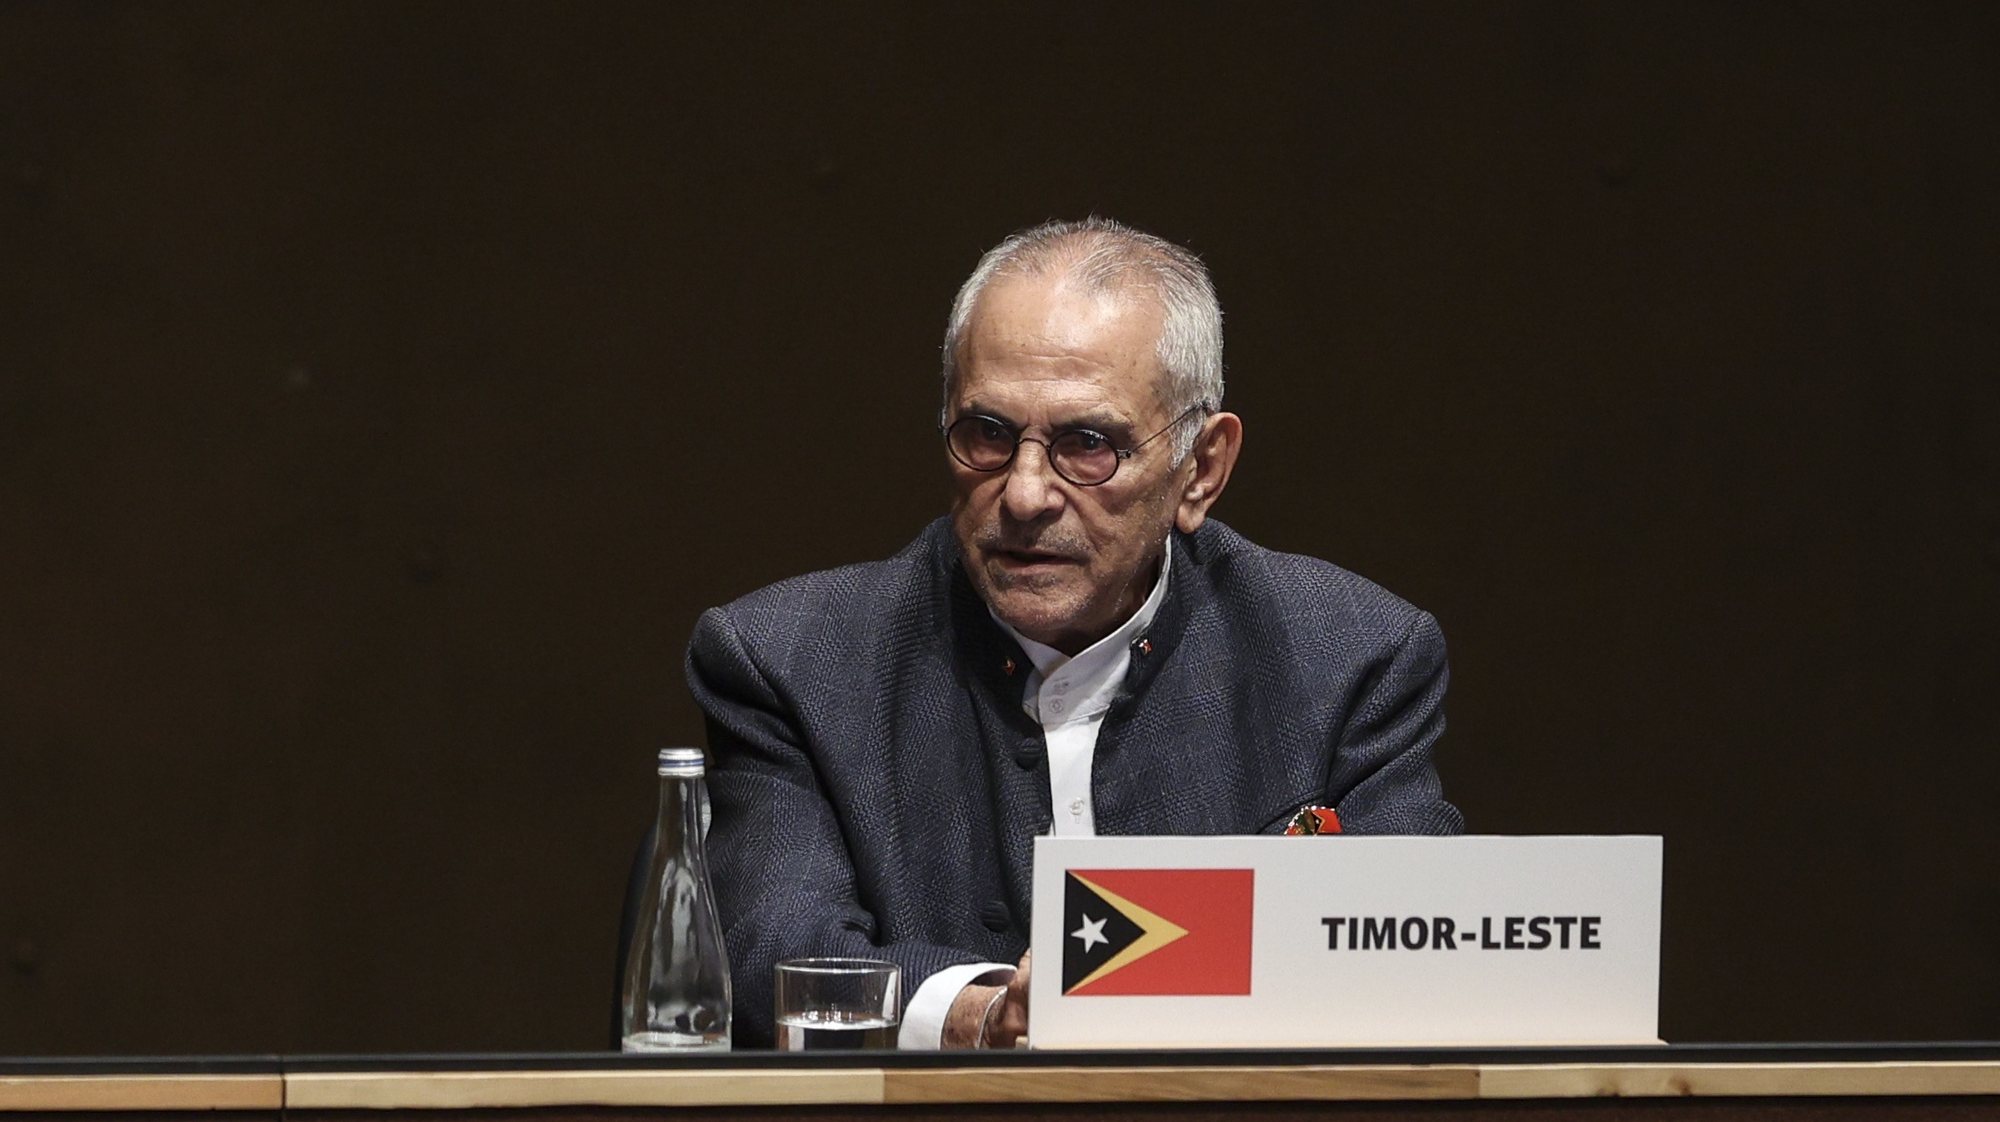 O Presidente da República de Timor-Leste, José Ramos-Horta intervém na sessão comemorativa do 50º aniversário do 25 de abril de 1974, com os Chefes de Estado irmãos, cuja independência esteve ligada do 25 de abril em Lisboa, 25 de abril de 2024. MIGUEL A. LOPES/LUSA